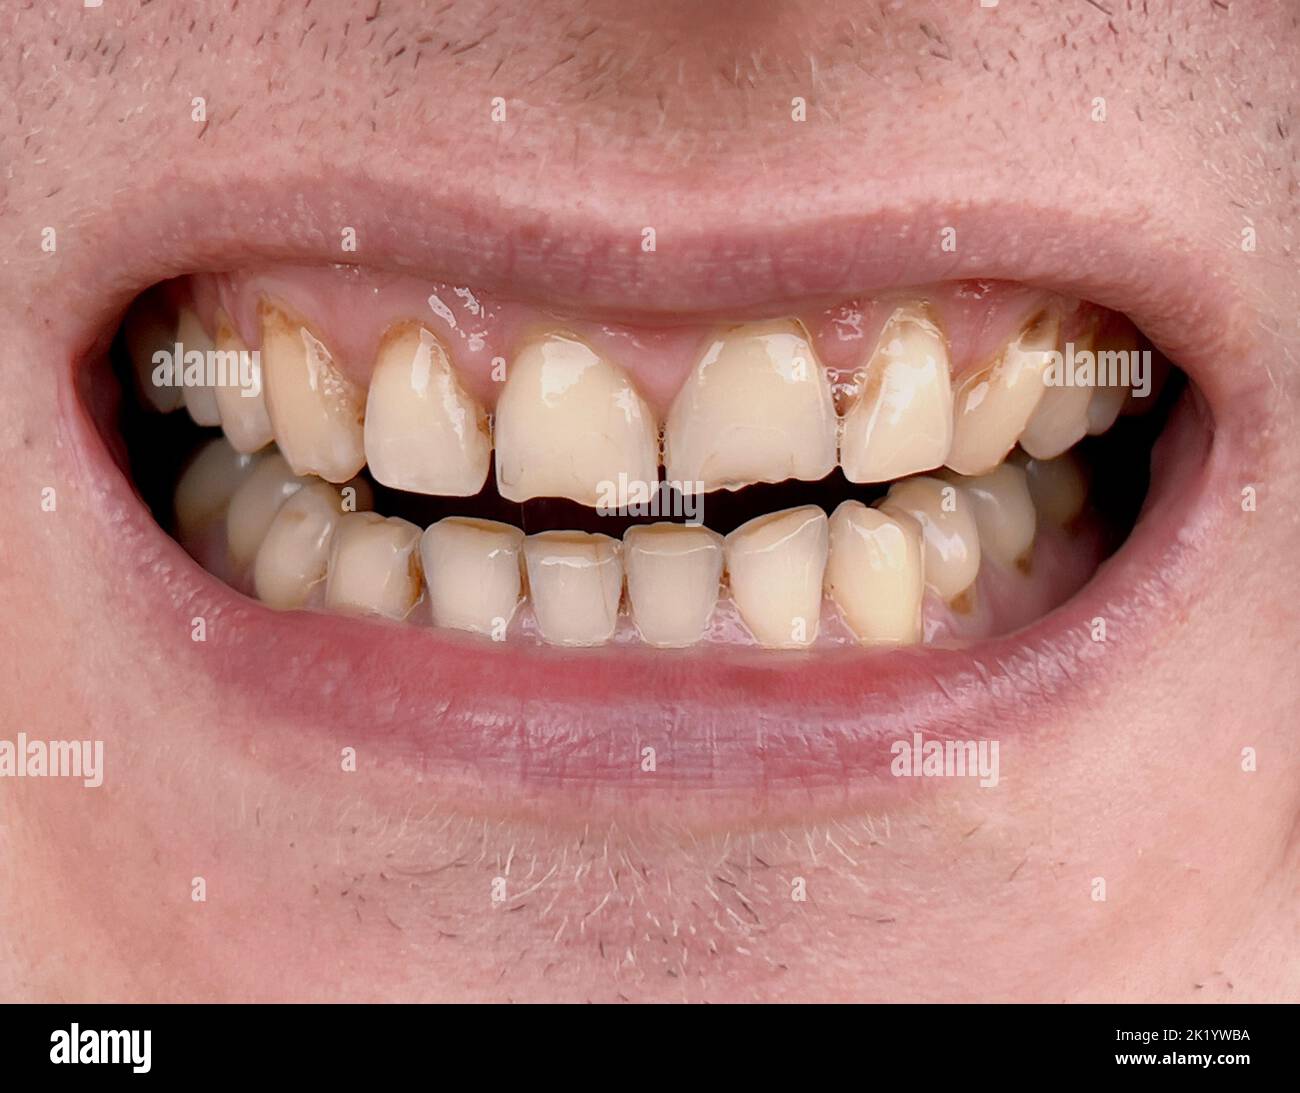 Bocca sorridente dell'uomo con denti gialli storti da vicino. Denti usurati malsani che richiedono un trattamento in odontoiatria. Bruxismo Foto Stock